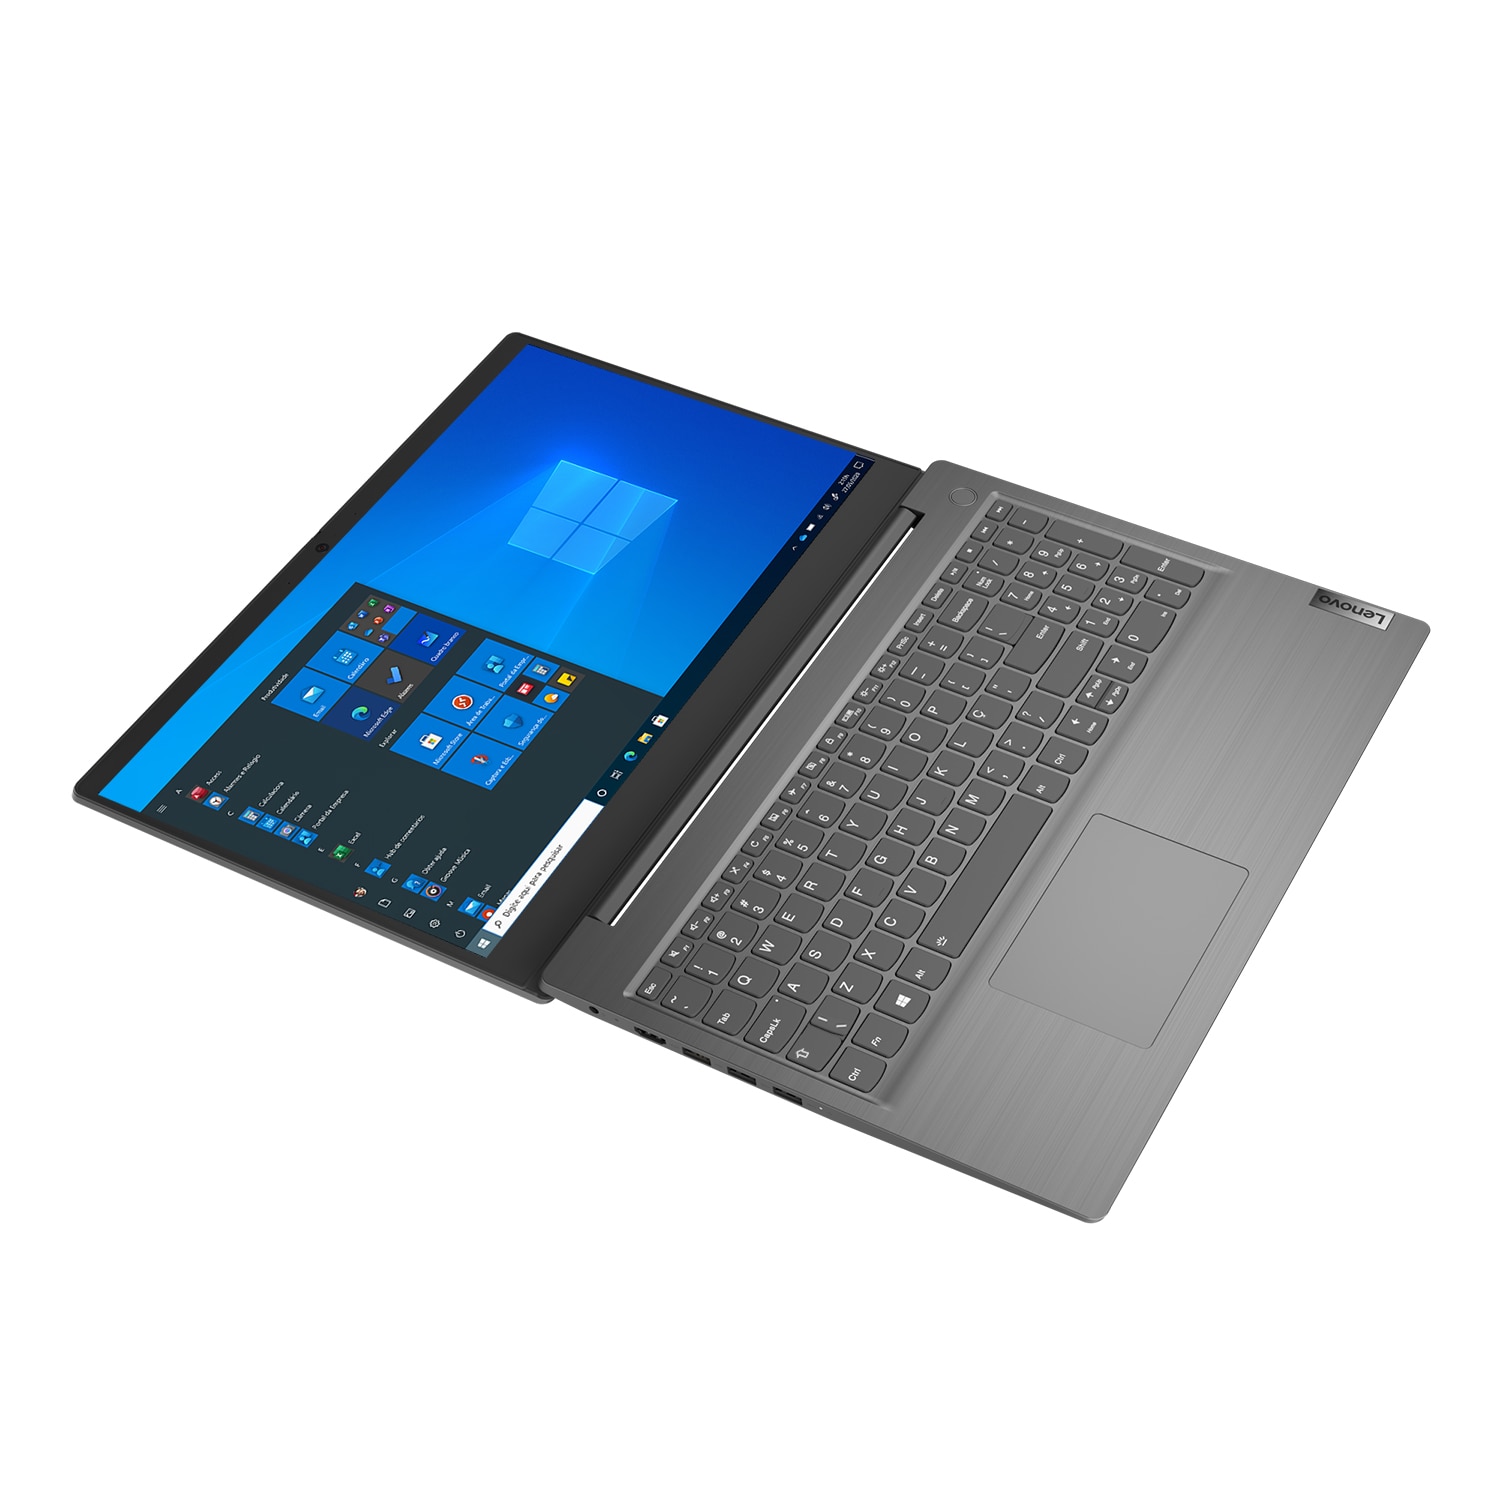 Notebook-Lenovo-V15-4.jpg?context=bWFzdGVyfHJvb3R8NTUzMzk0fGltYWdlL2pwZWd8aDczL2hmZC8xMTgxMDQxNjY1NjQxNC5qcGd8YmZiNzQ0YTEwODUxYjA2MzAxN2Q3M2ZjZmZkY2JlYzAzYWQxM2UxNWQ1MTA0NjAyYTk0ZWM4MTkxNjg5ZmQyYQ